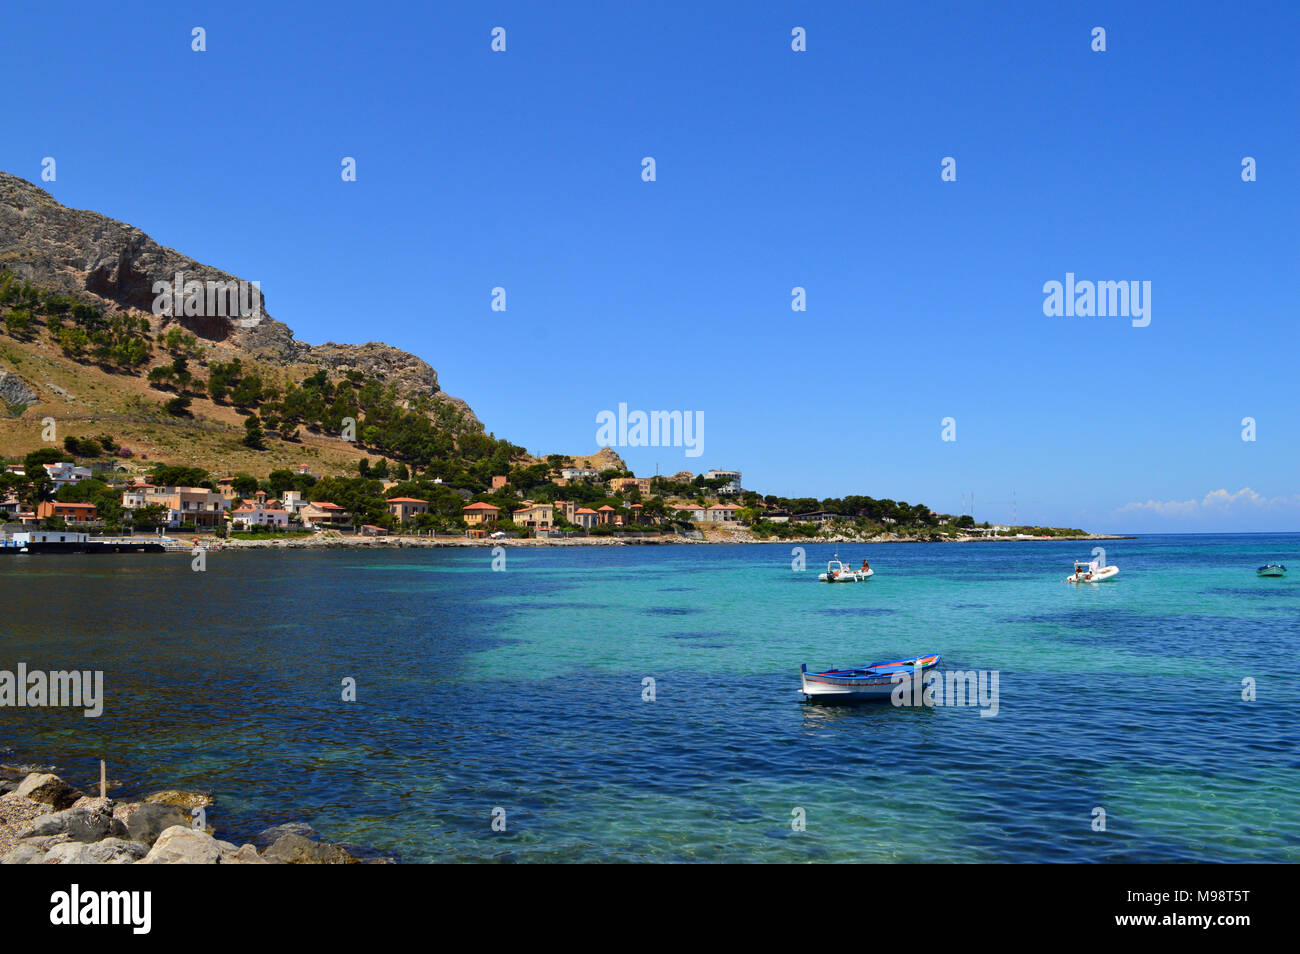 Area View of Sferracavallo, Palermo, Sicilian Coastline, Landscape, Mediterranean Sea Stock Photo